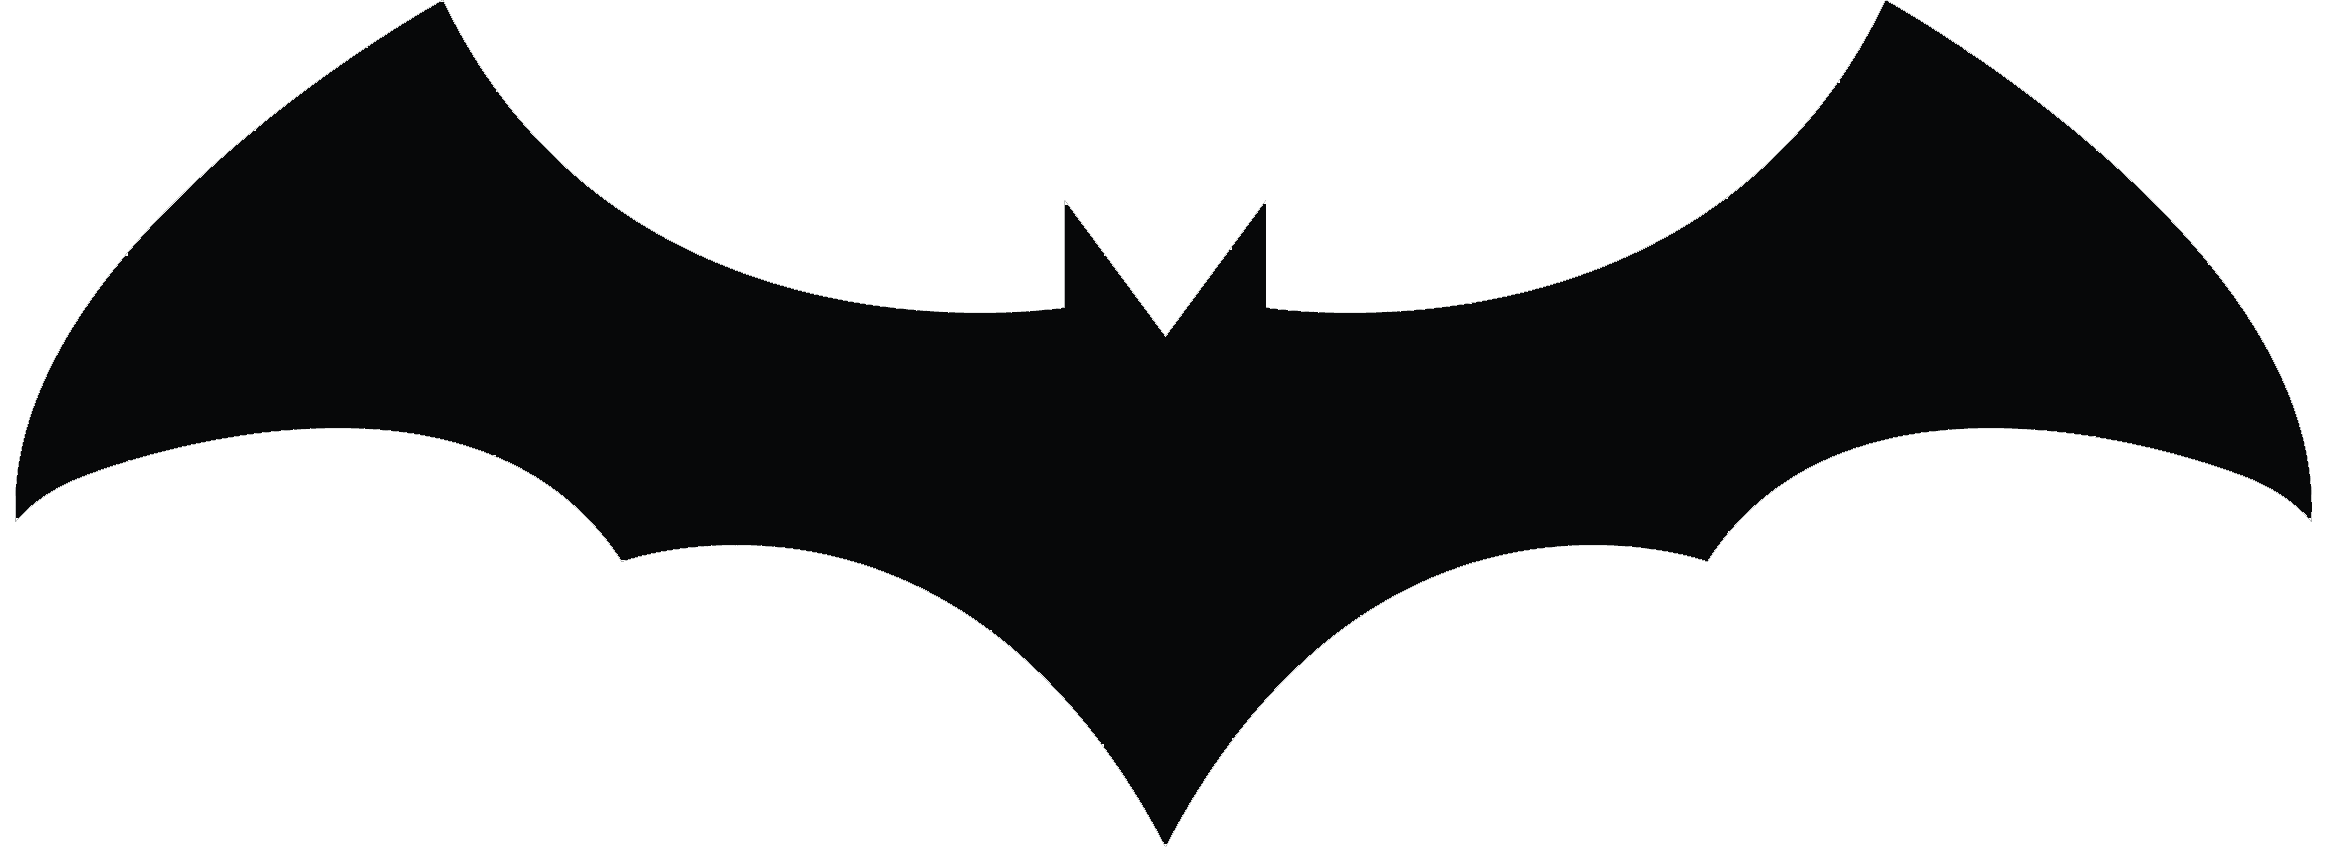 Bats Logo - Bat Logo Open Wings transparent PNG